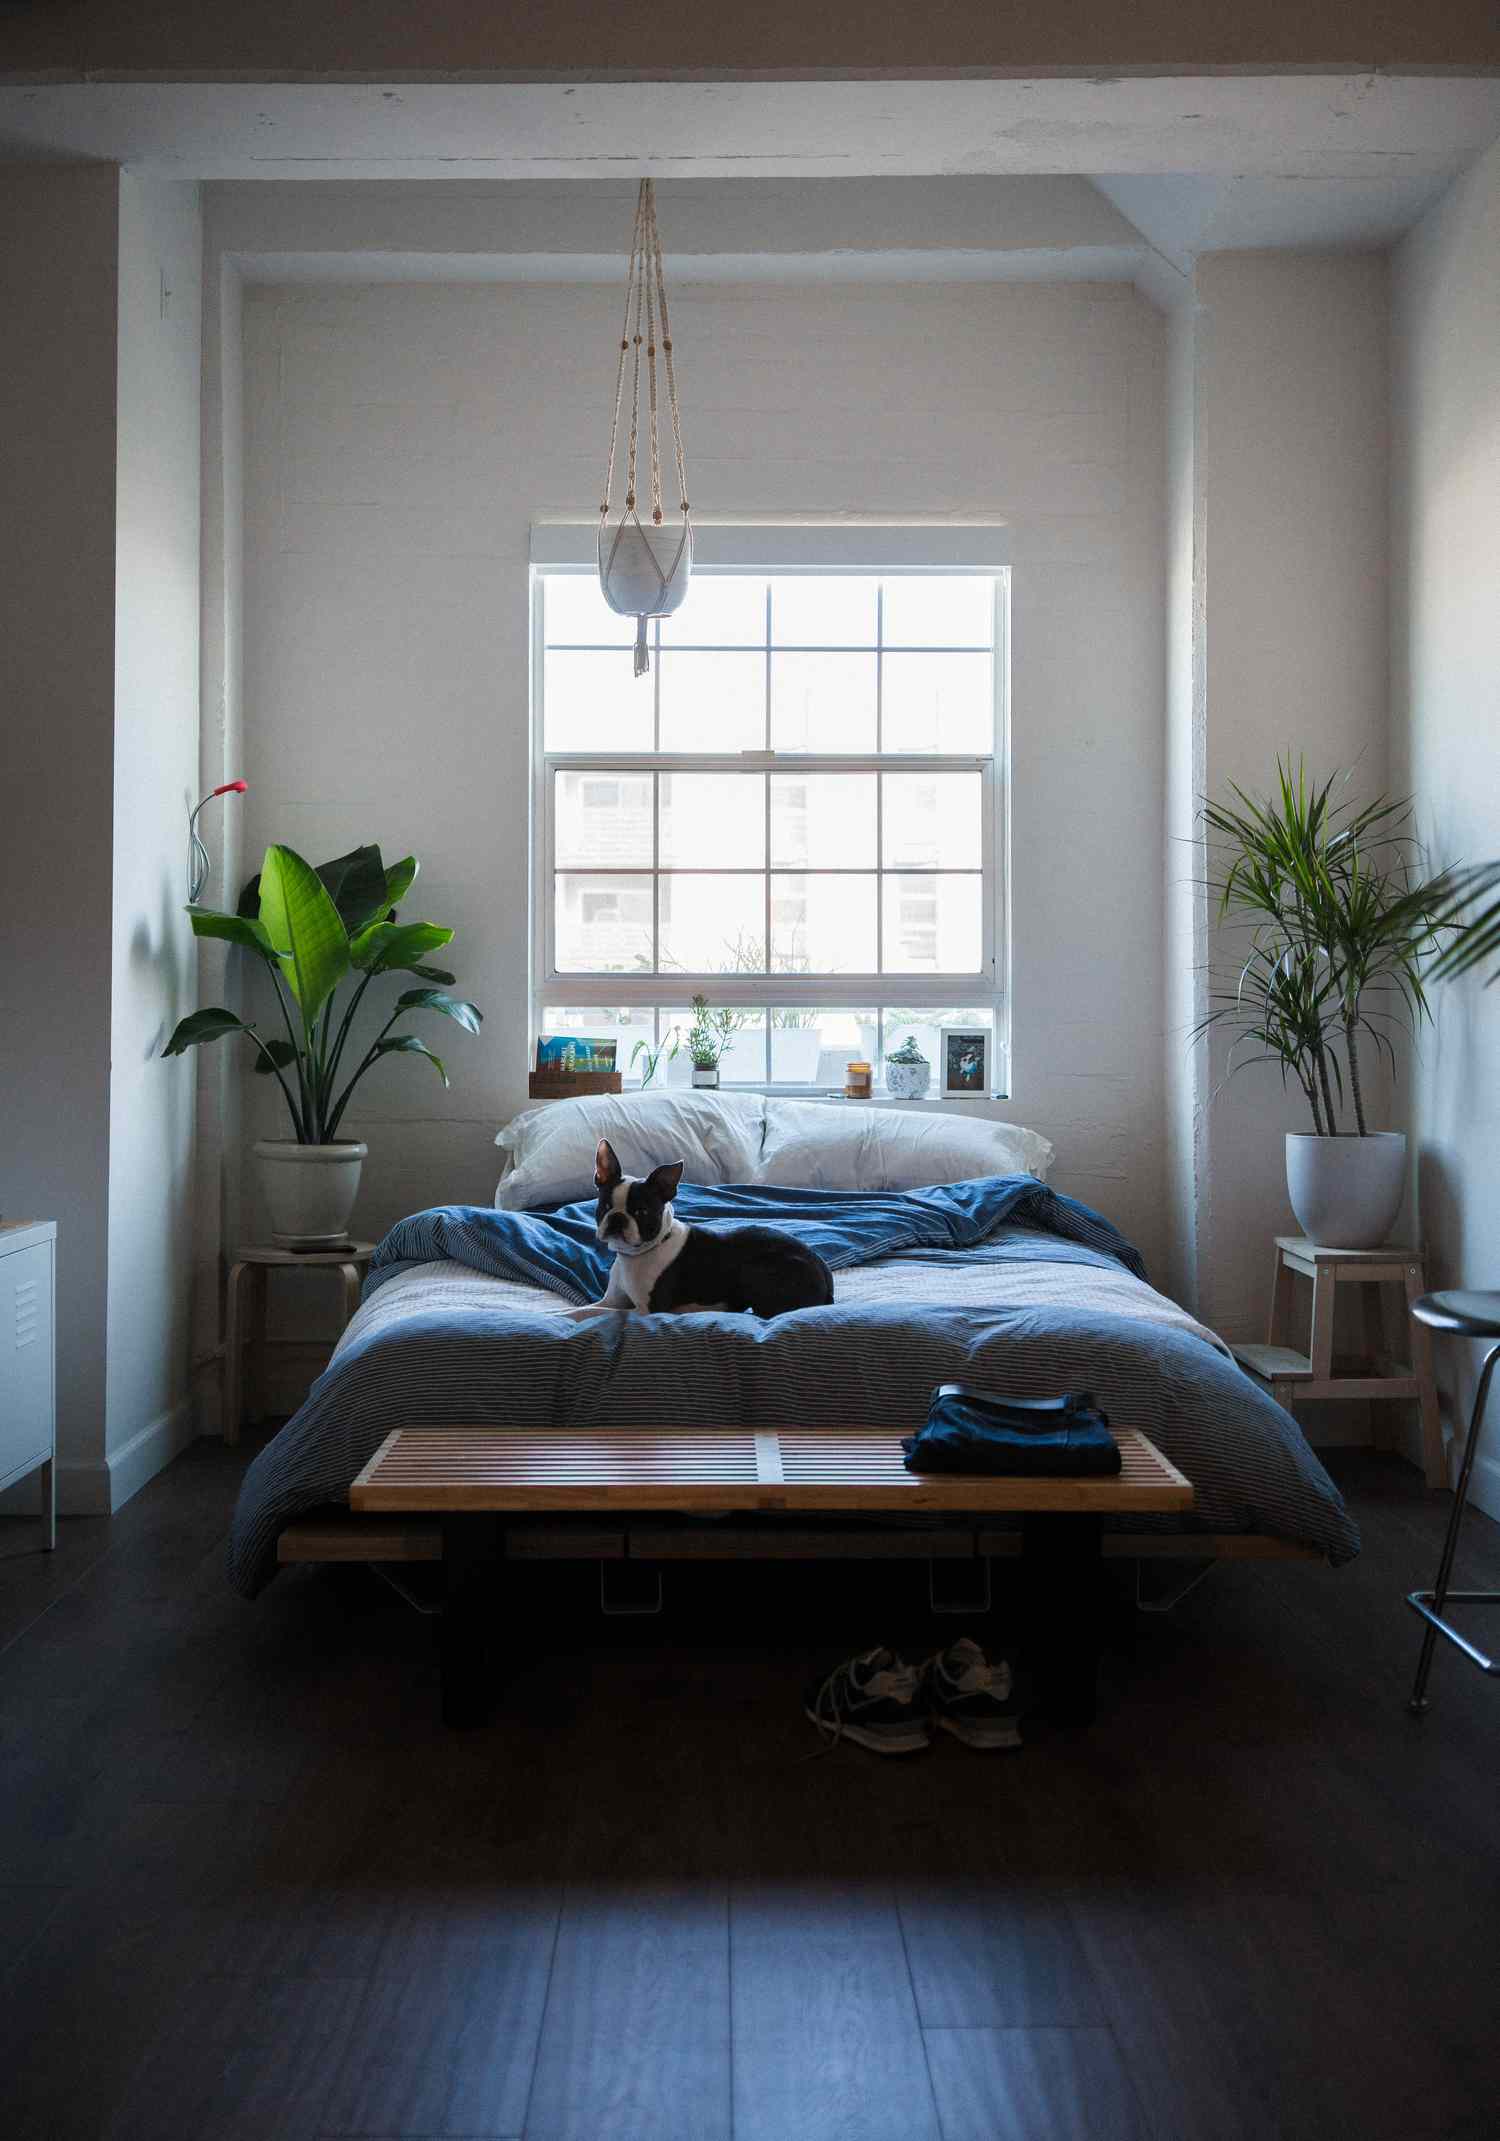 Dormitorio tranquilo con plantas, suelos oscuros y sábanas azules